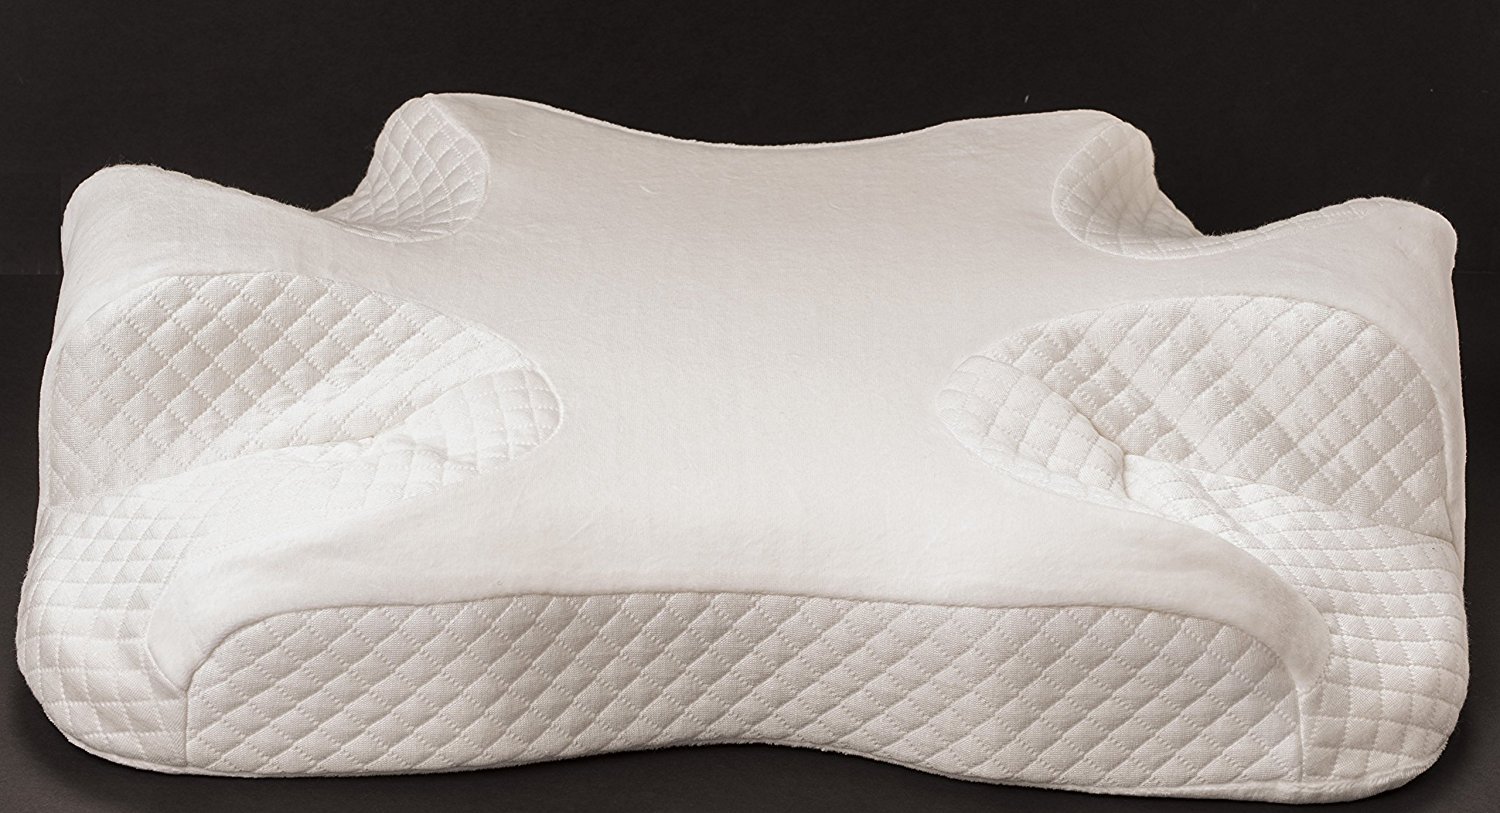 an Endurimed CPAP pillow